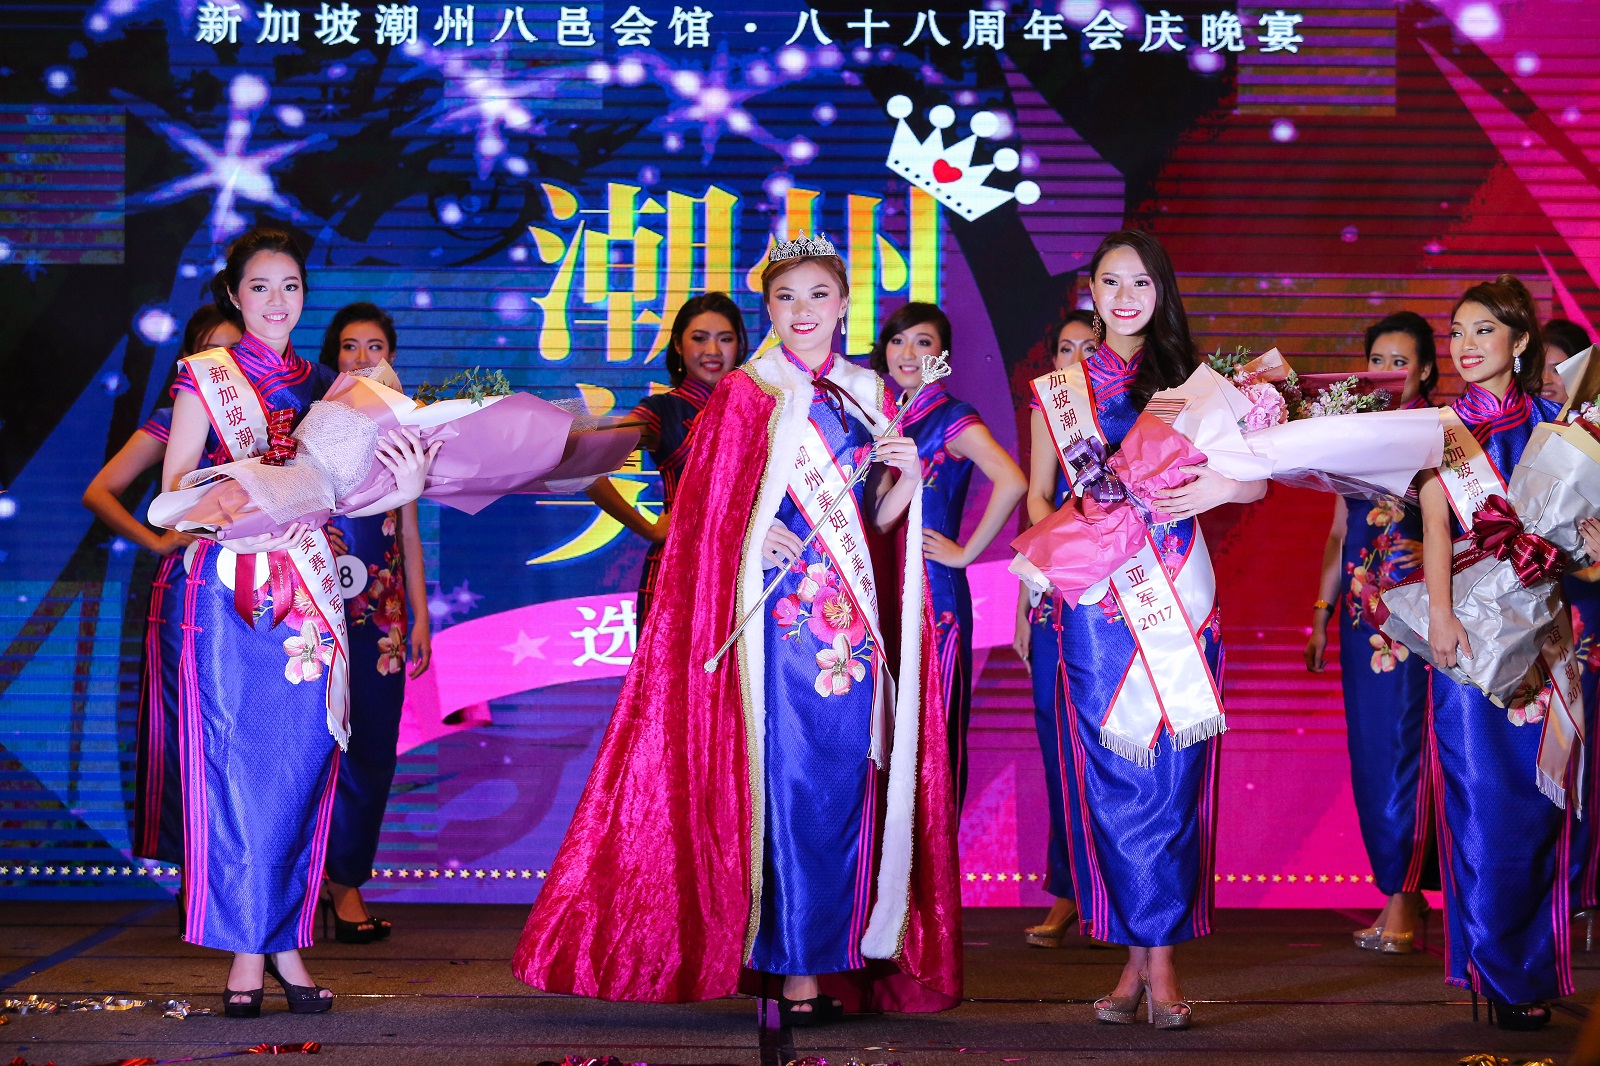 20171023-Teochew beauty queens.jpg